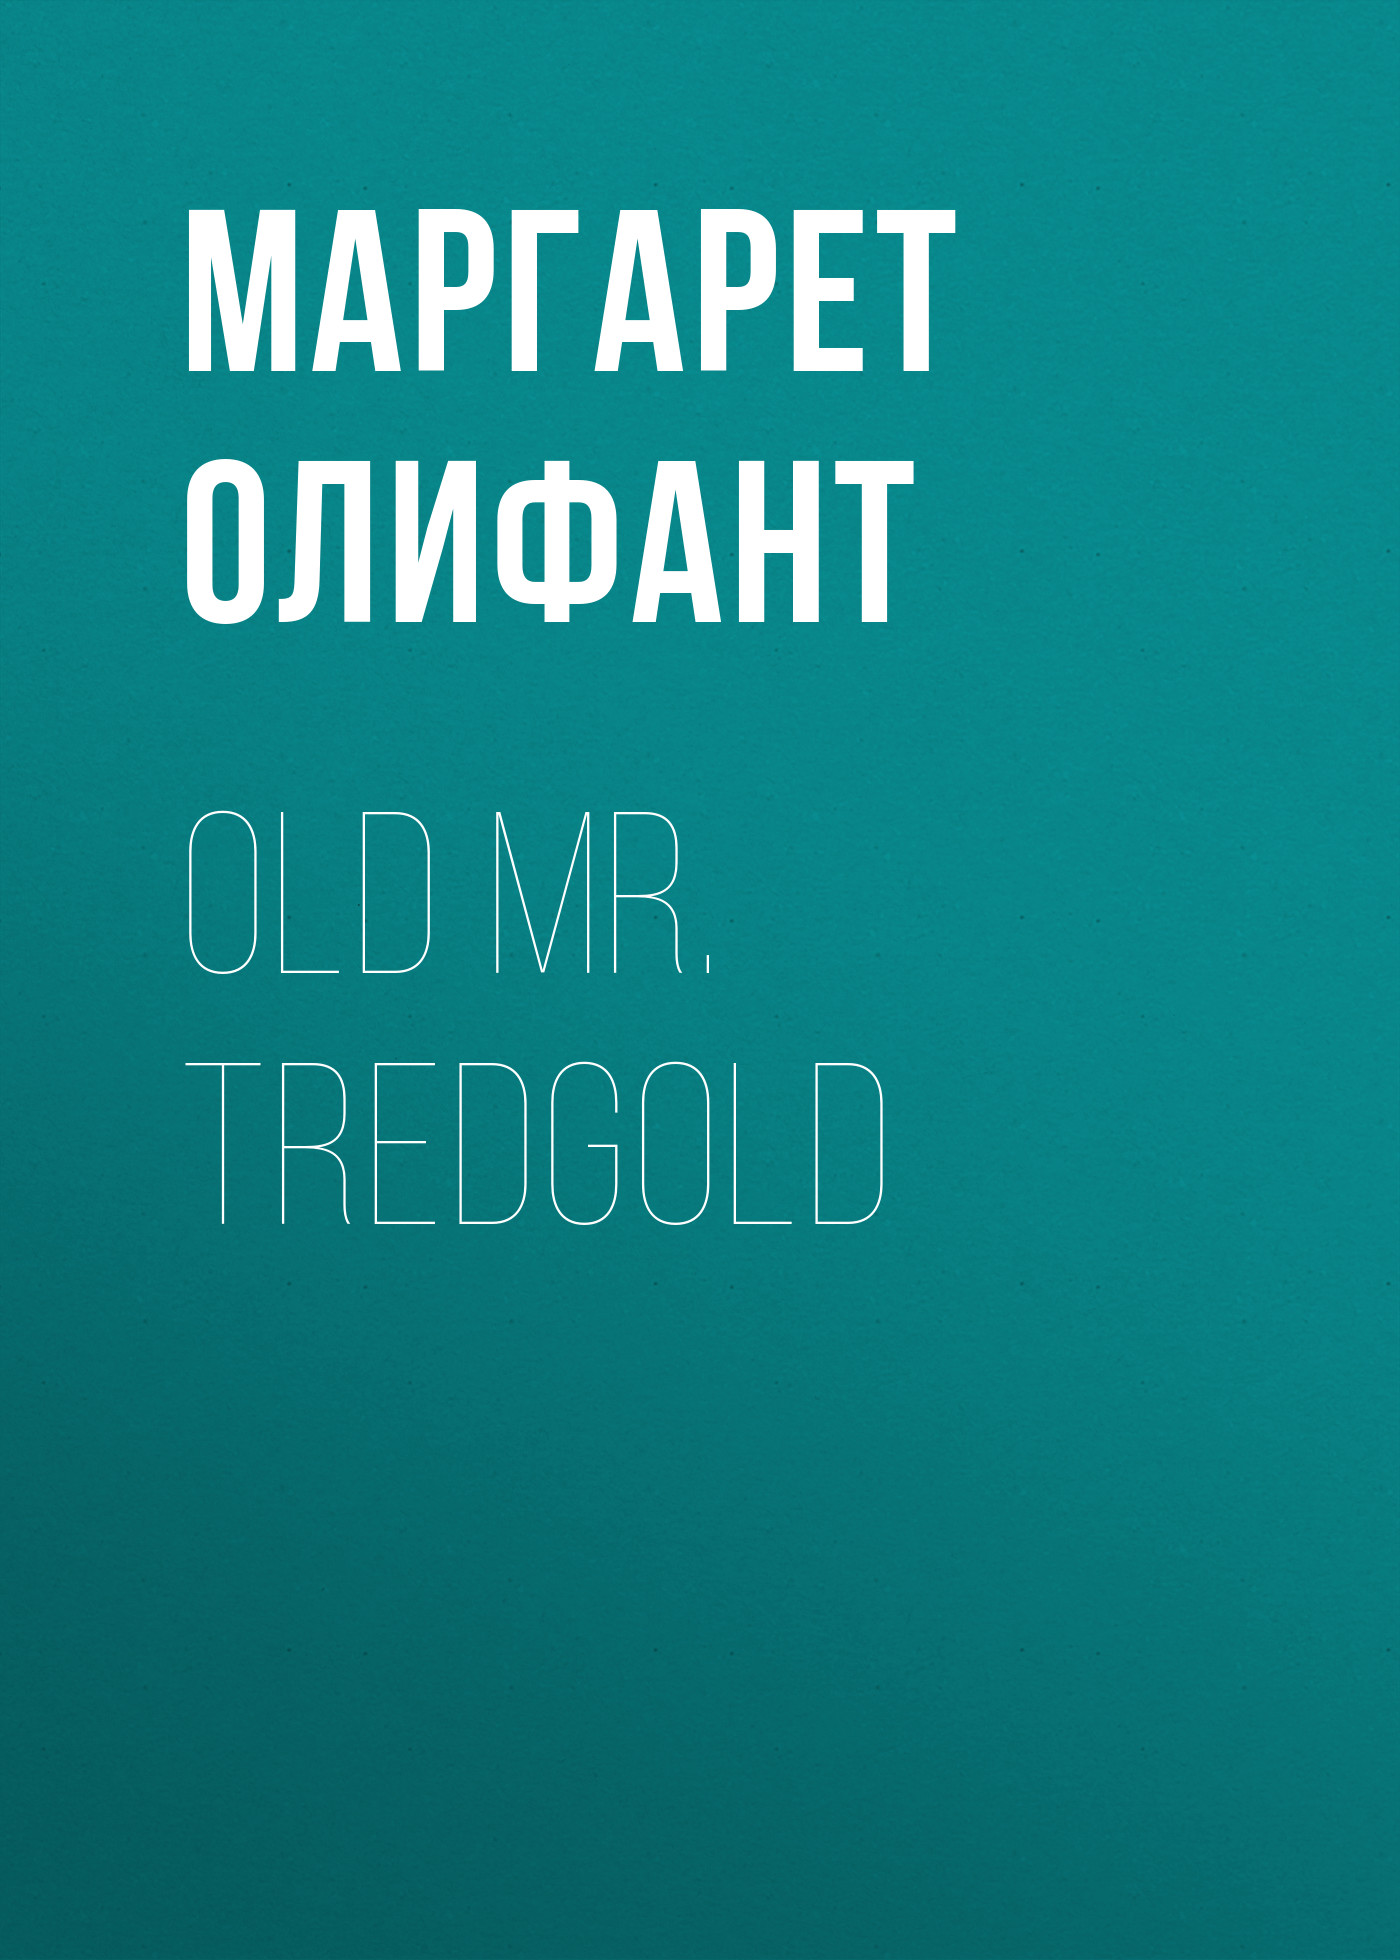 Книга Old Mr. Tredgold из серии , созданная Маргарет Олифант, может относится к жанру Зарубежная классика, Литература 19 века, Зарубежная старинная литература. Стоимость электронной книги Old Mr. Tredgold с идентификатором 34842974 составляет 0 руб.